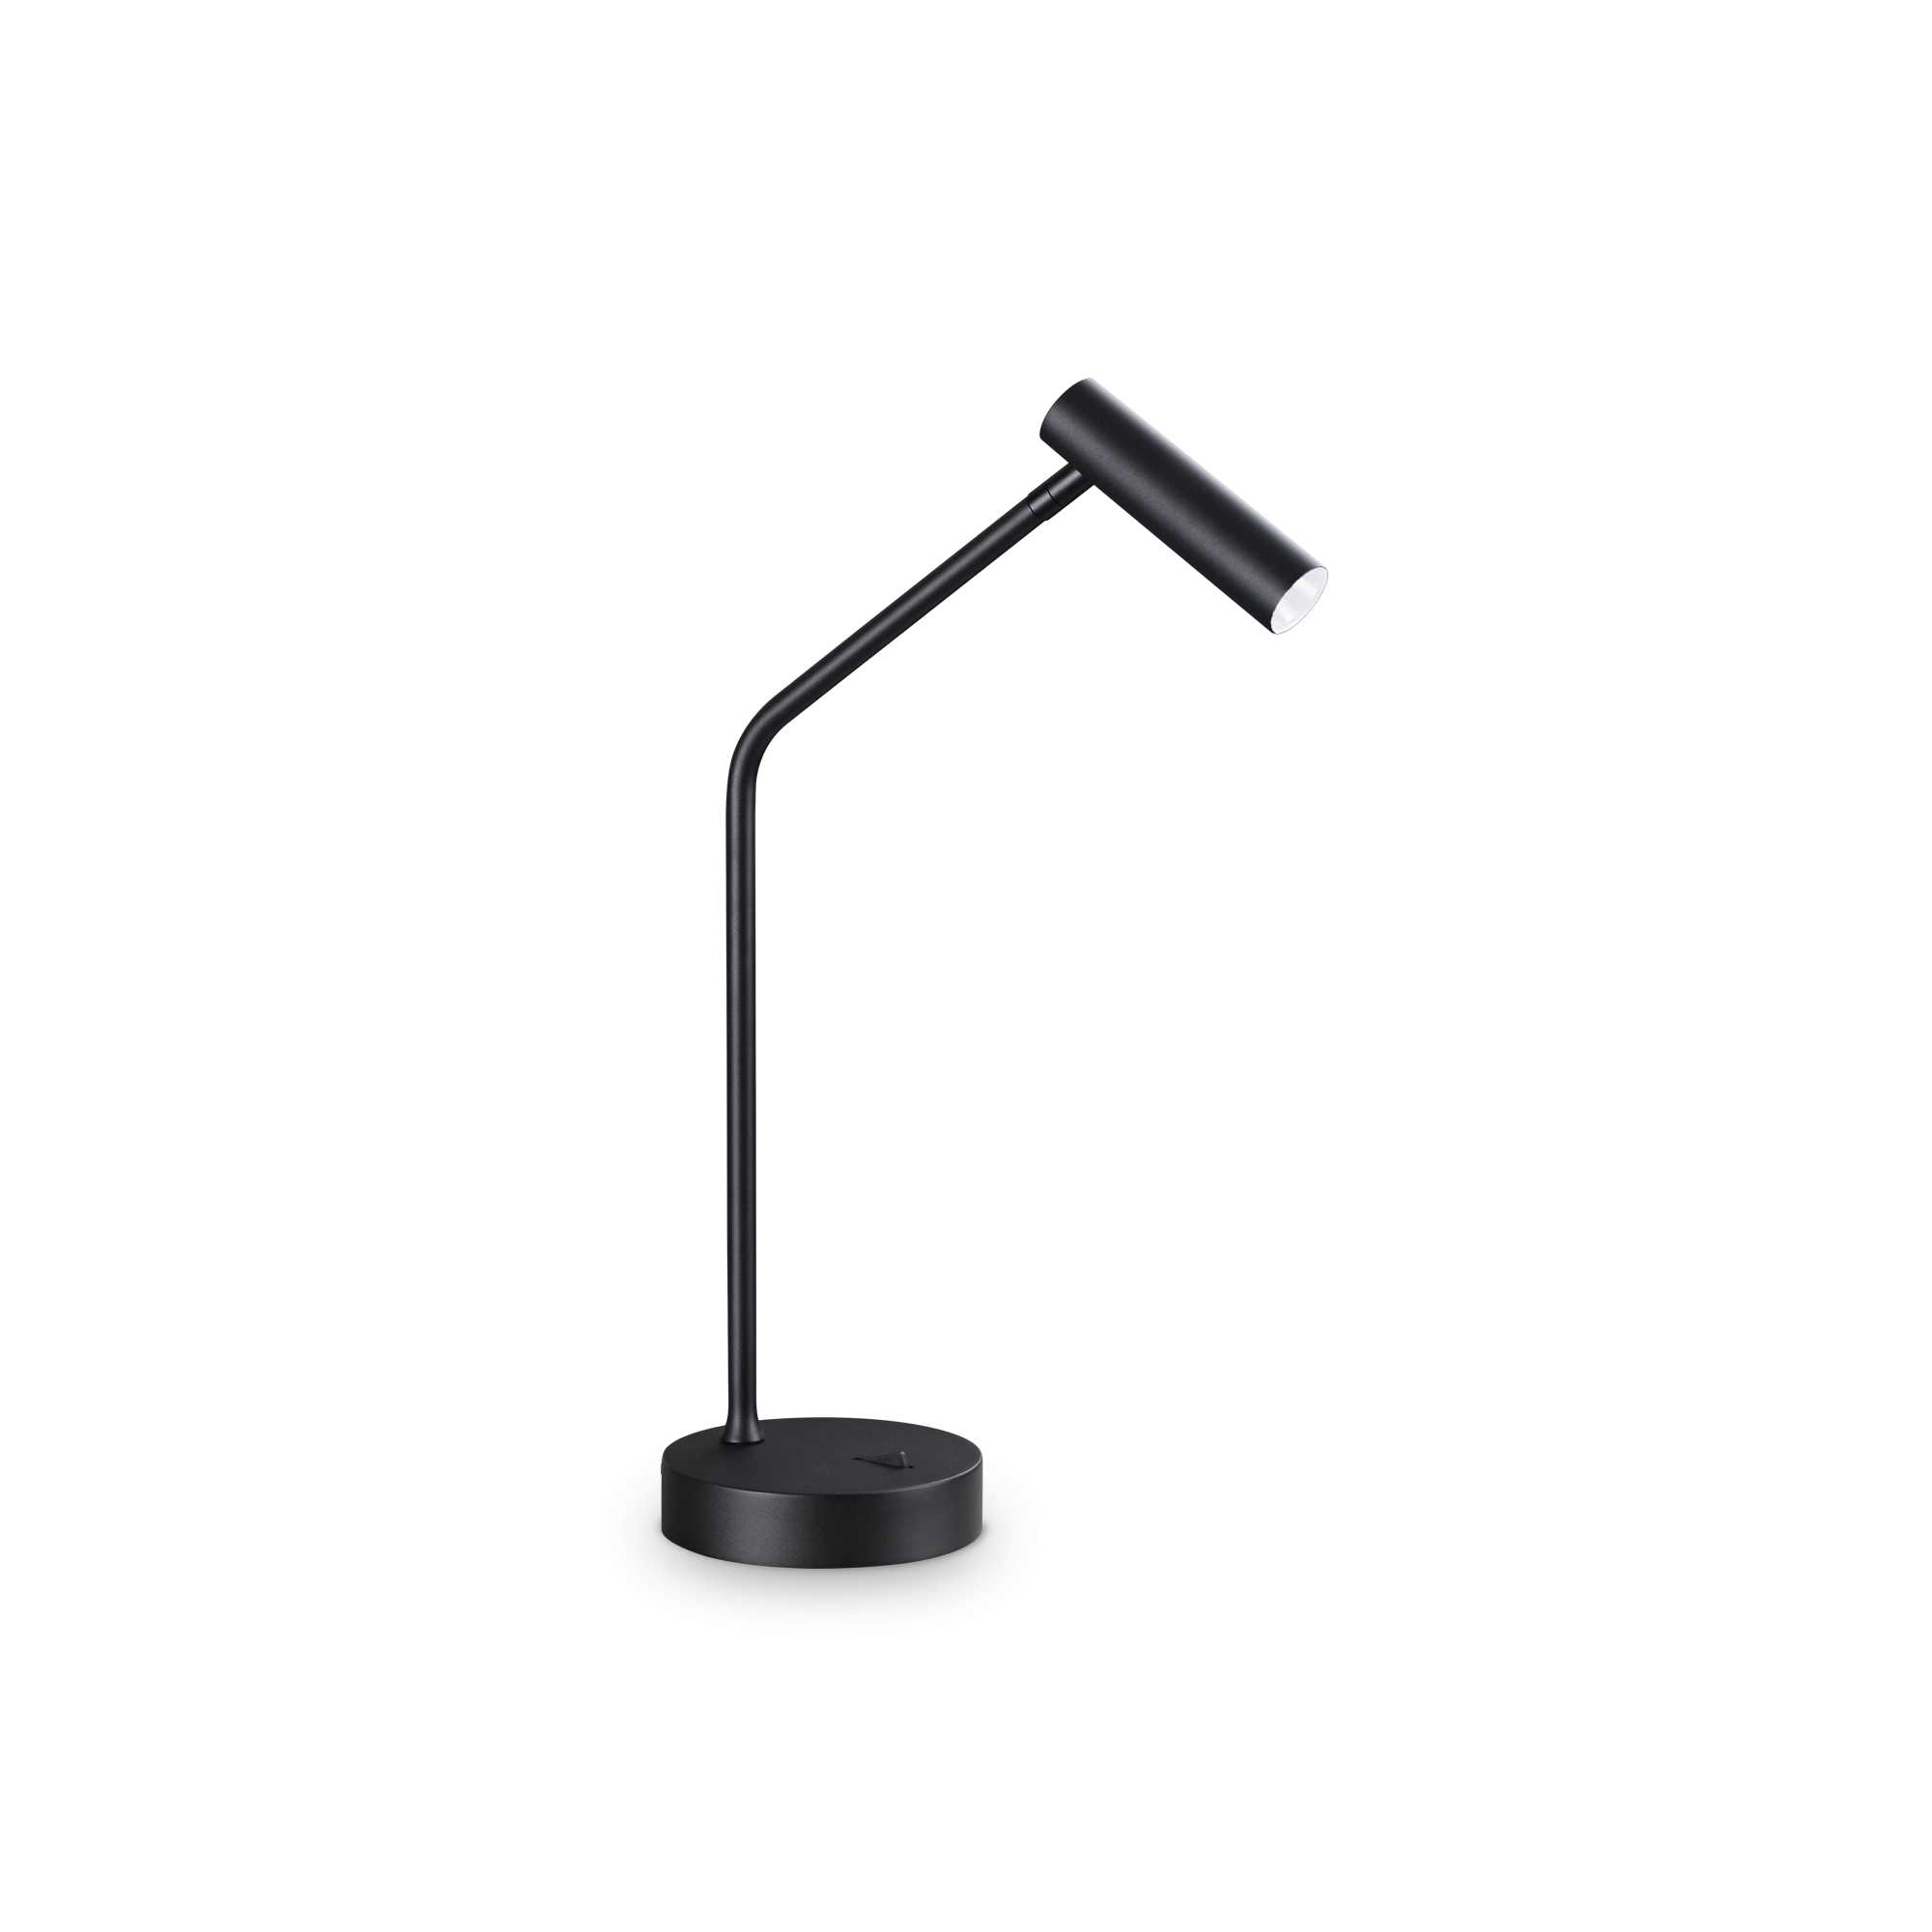 AD hotelska oprema Stolna lampa Easy tl- Crne boje slika proizvoda